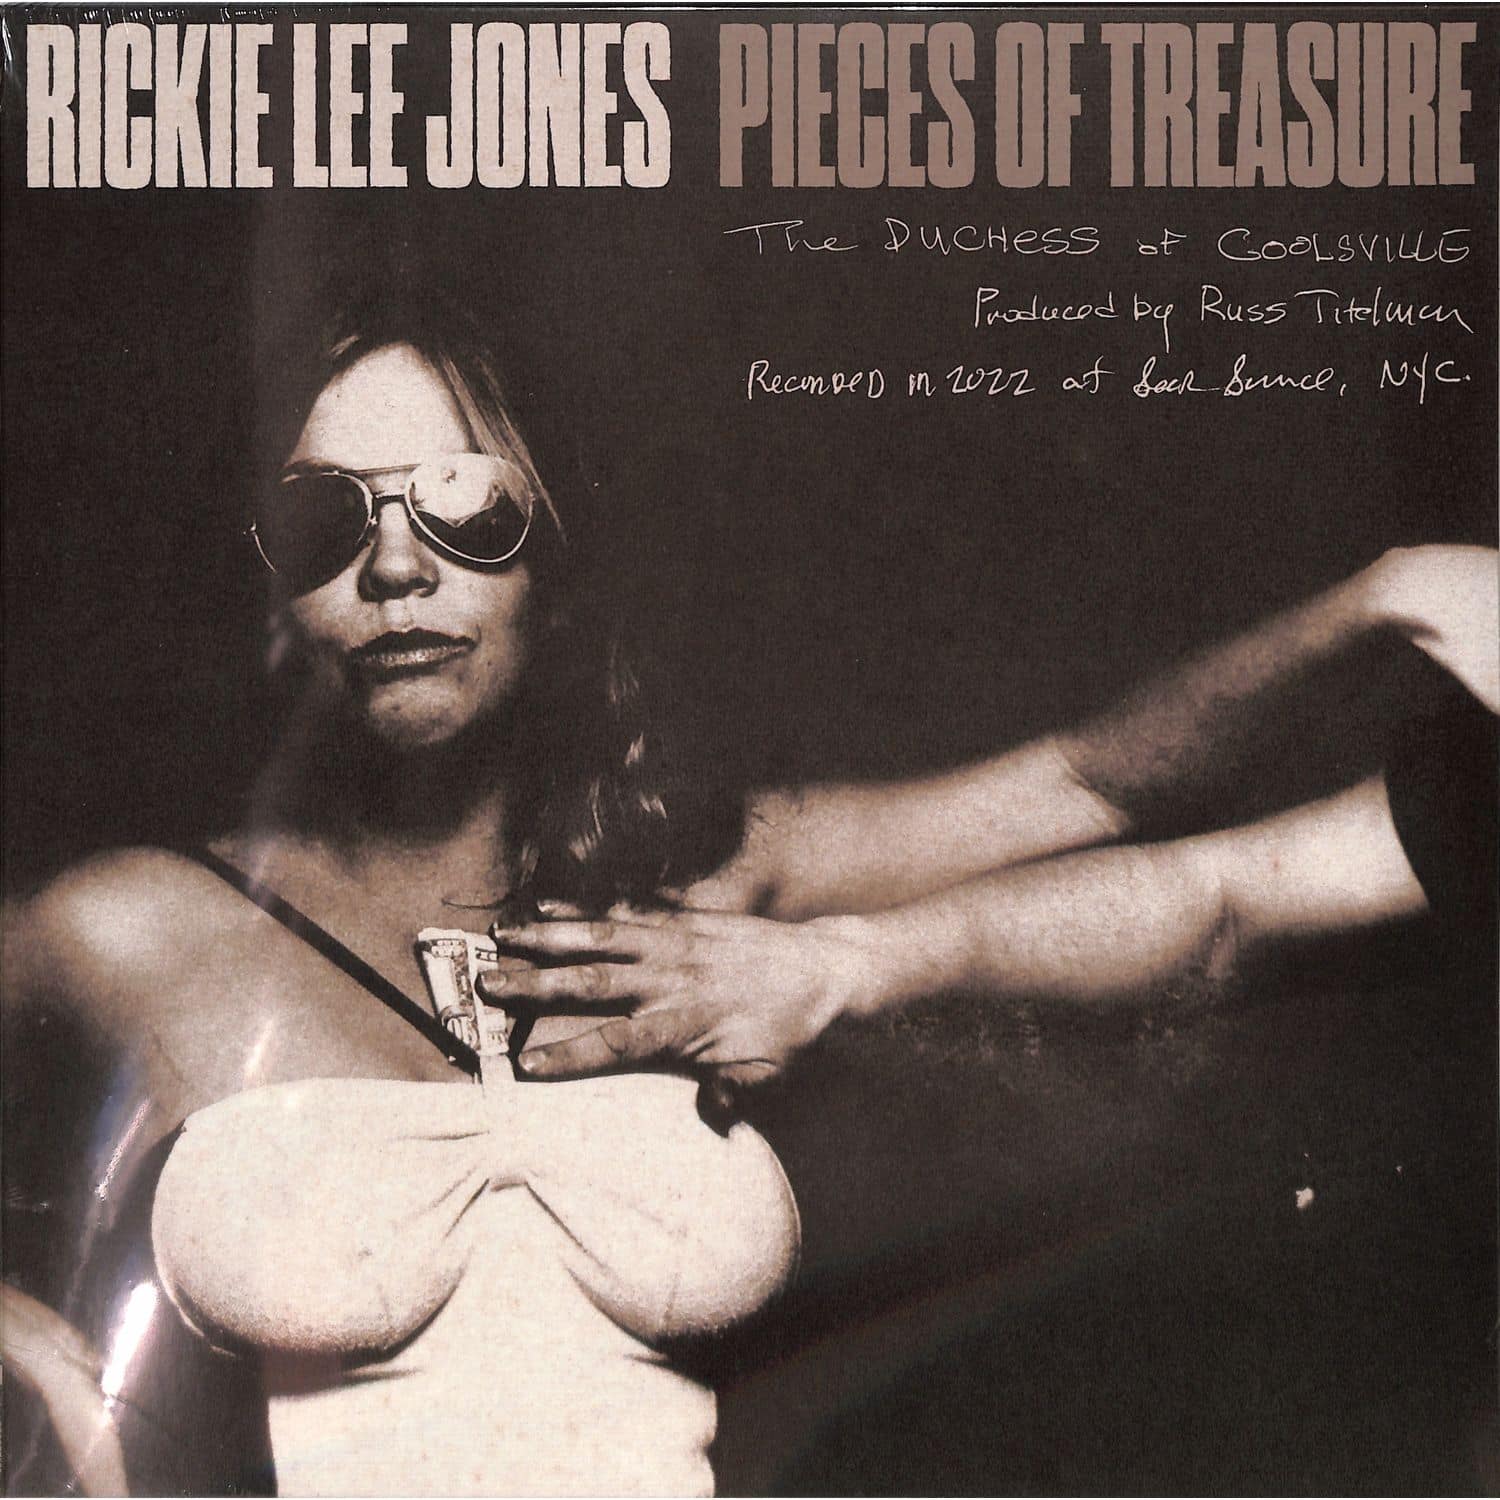 Rickie Lee Jones - PIECES OF TREASURE 